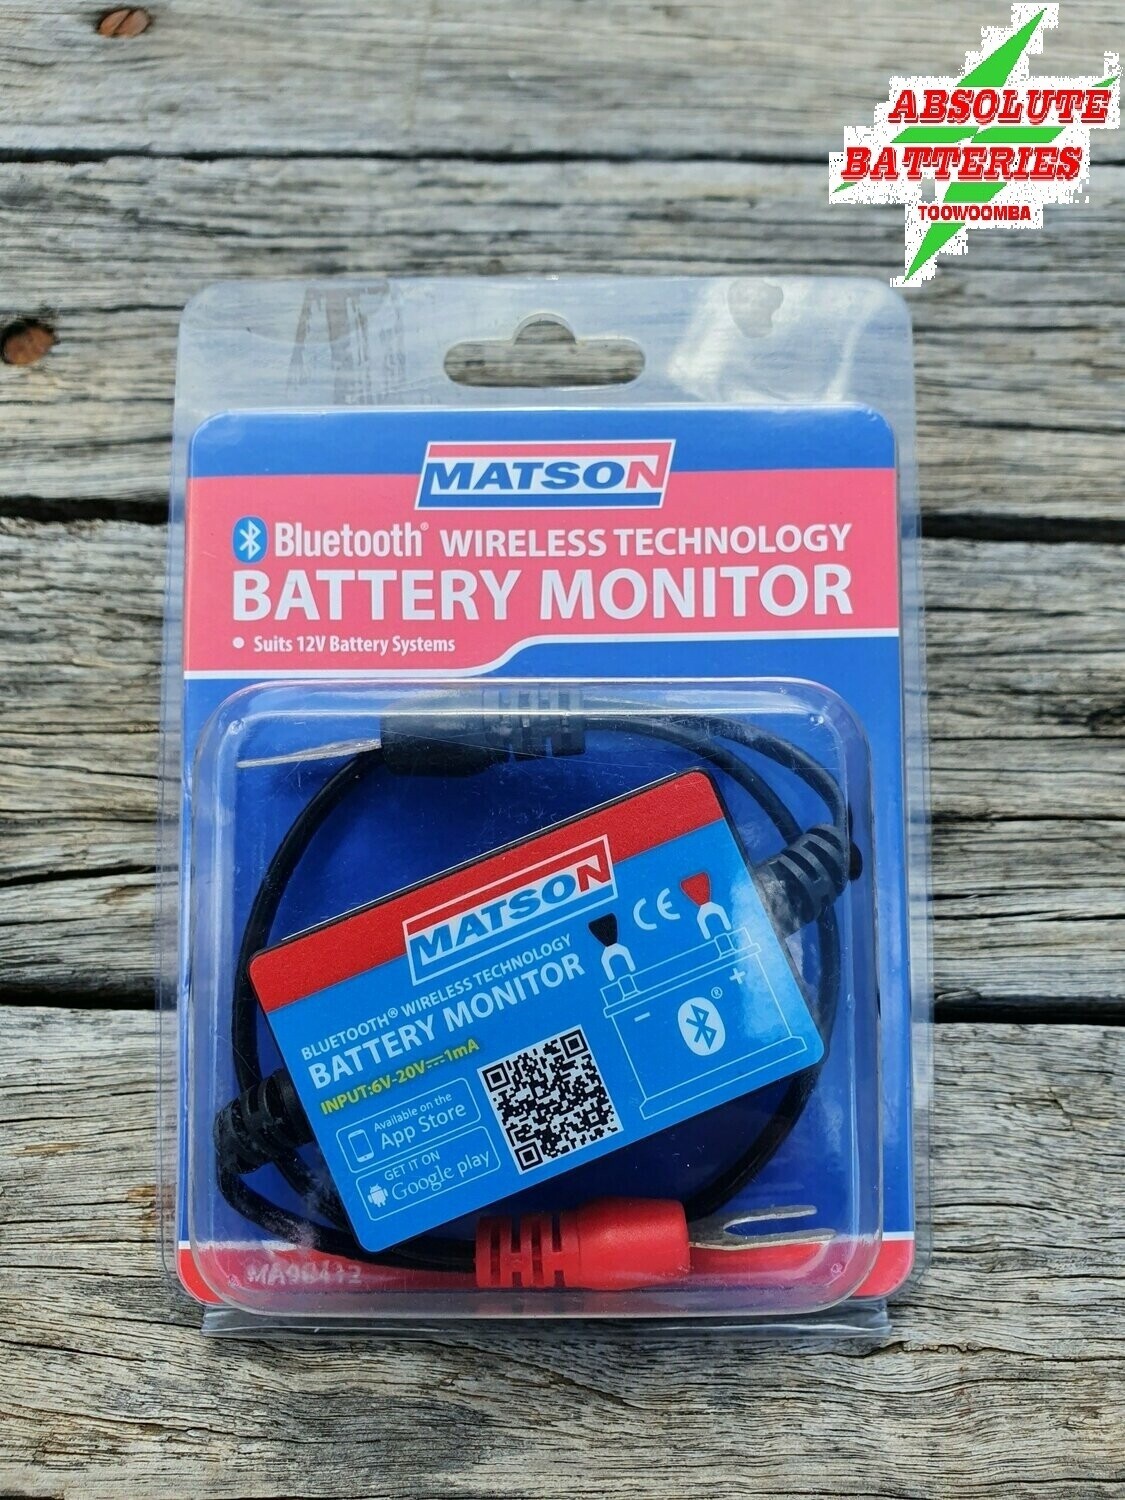 Matson BlueTooth Battery Monitor